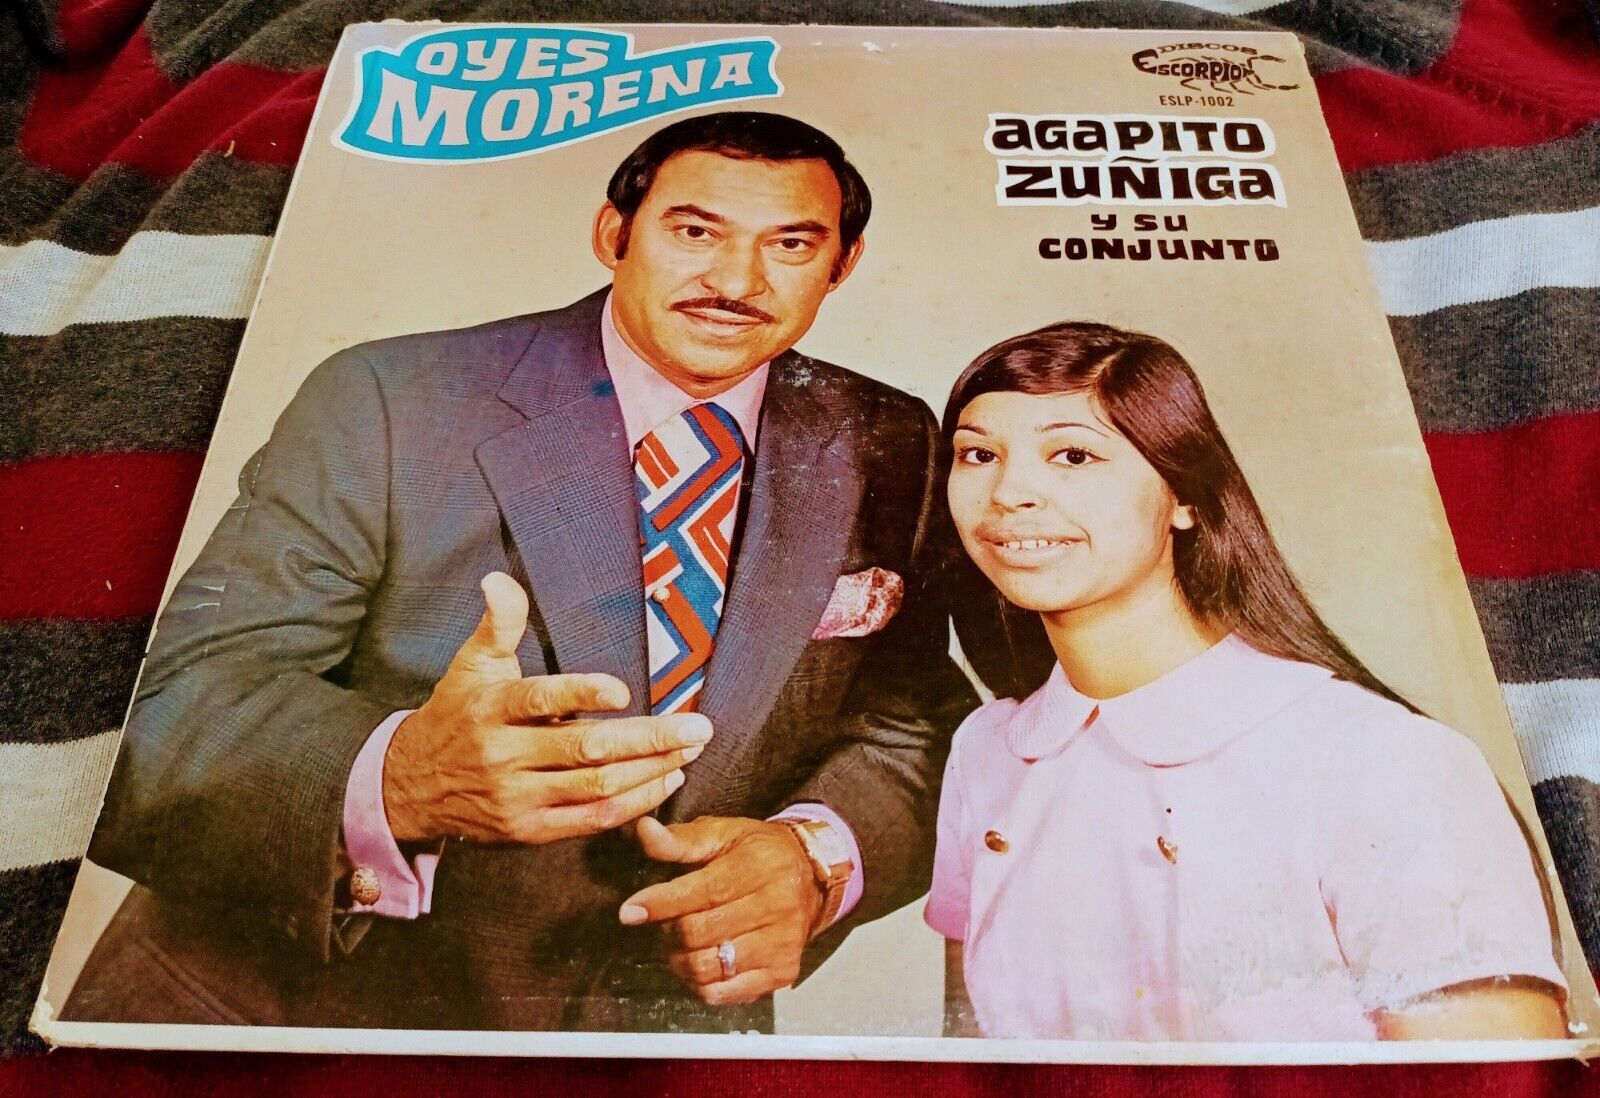 AGAPITO ZUÑIGA Y SU CONJUNTO "OYES MORENA" TEXMEX TEJANO NORTEÑO RARE LP VG+